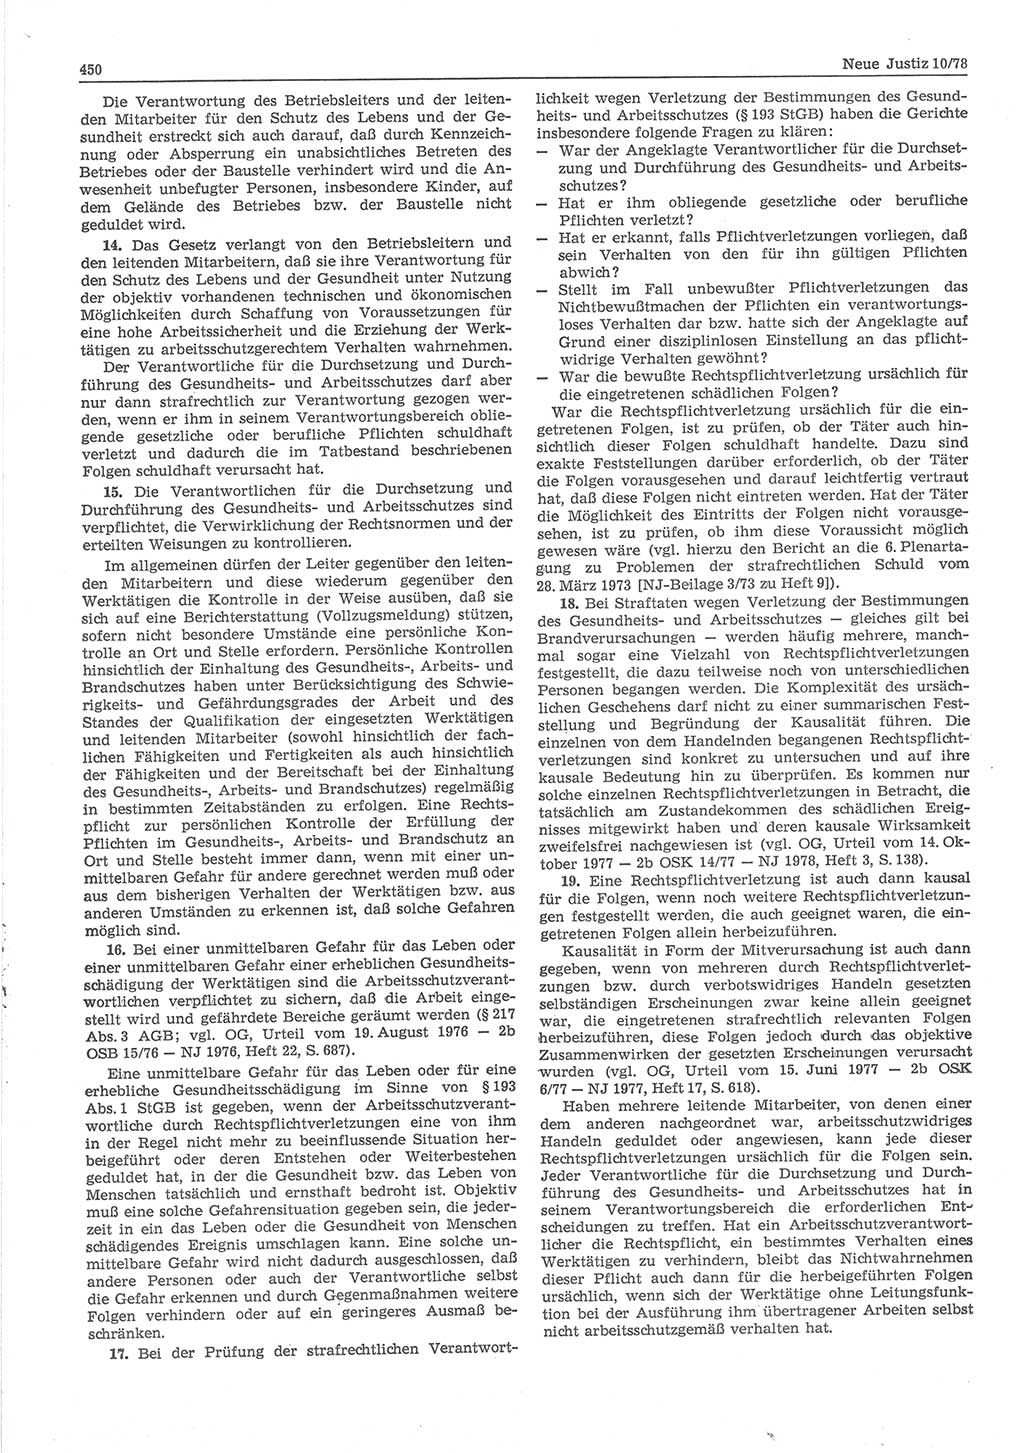 Neue Justiz (NJ), Zeitschrift für sozialistisches Recht und Gesetzlichkeit [Deutsche Demokratische Republik (DDR)], 32. Jahrgang 1978, Seite 450 (NJ DDR 1978, S. 450)